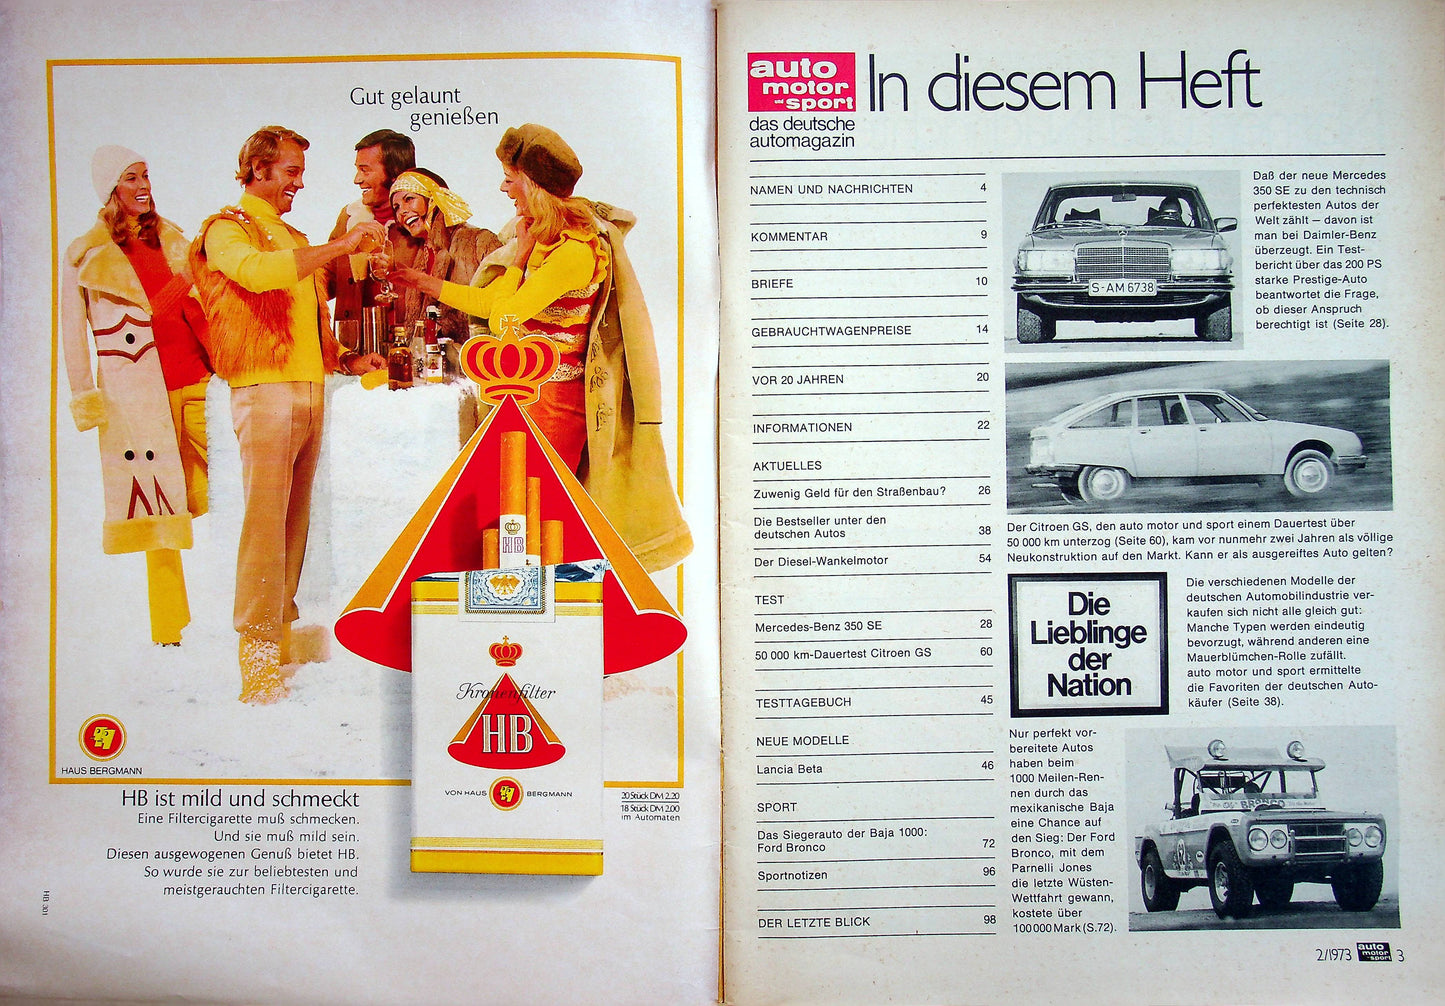 Auto Motor und Sport 02/1973